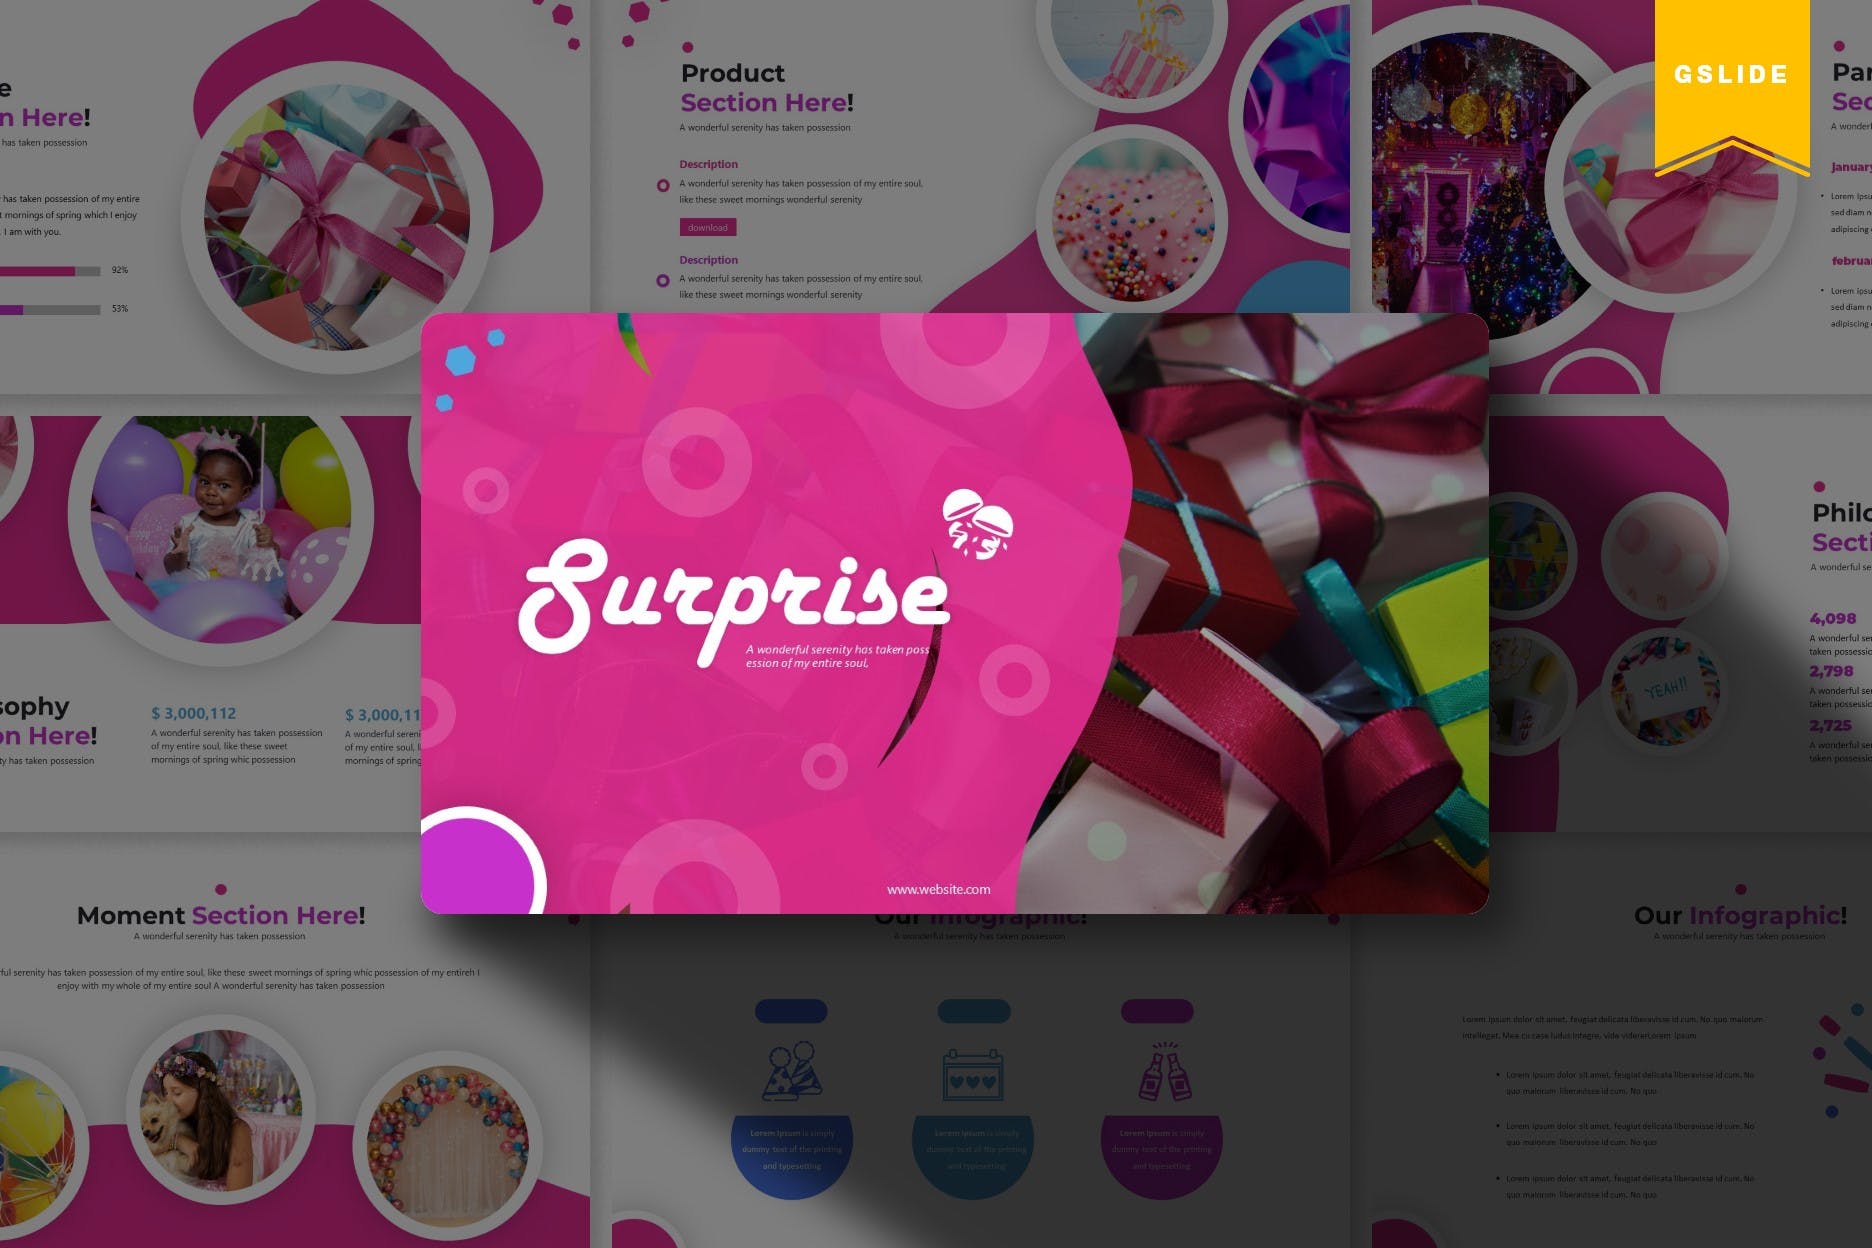 生日派对节日主题方案策划素材天下精选谷歌演示模板 Sureprise | Google Slides Template插图